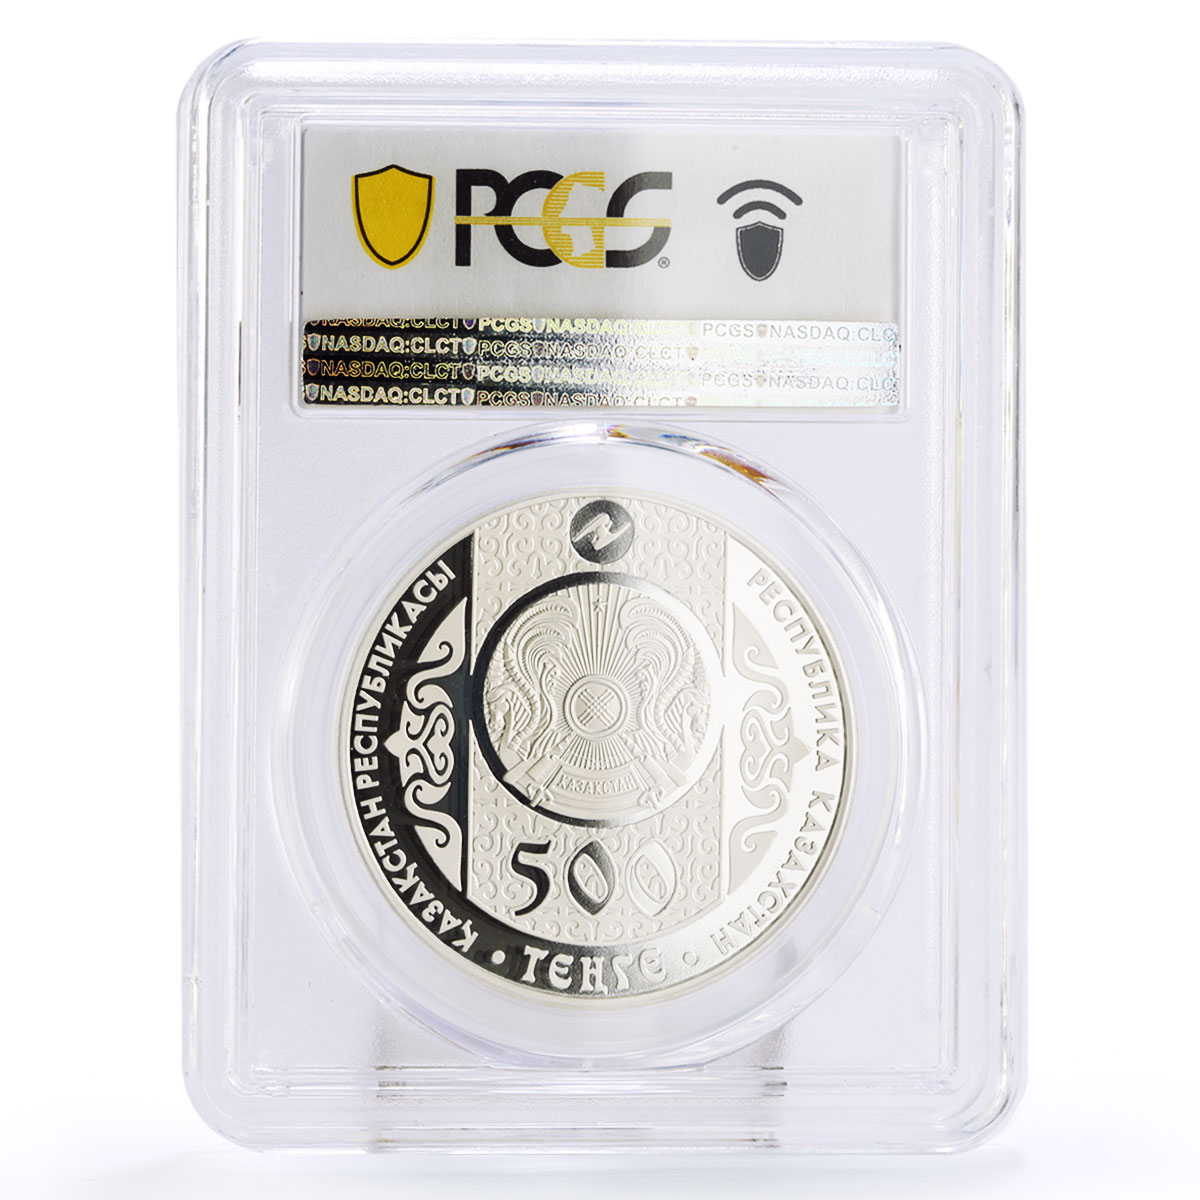 Kazakhstan 500 tenge Fairy Tales Aldar-Kose PR70 PCGS silver coin 2011